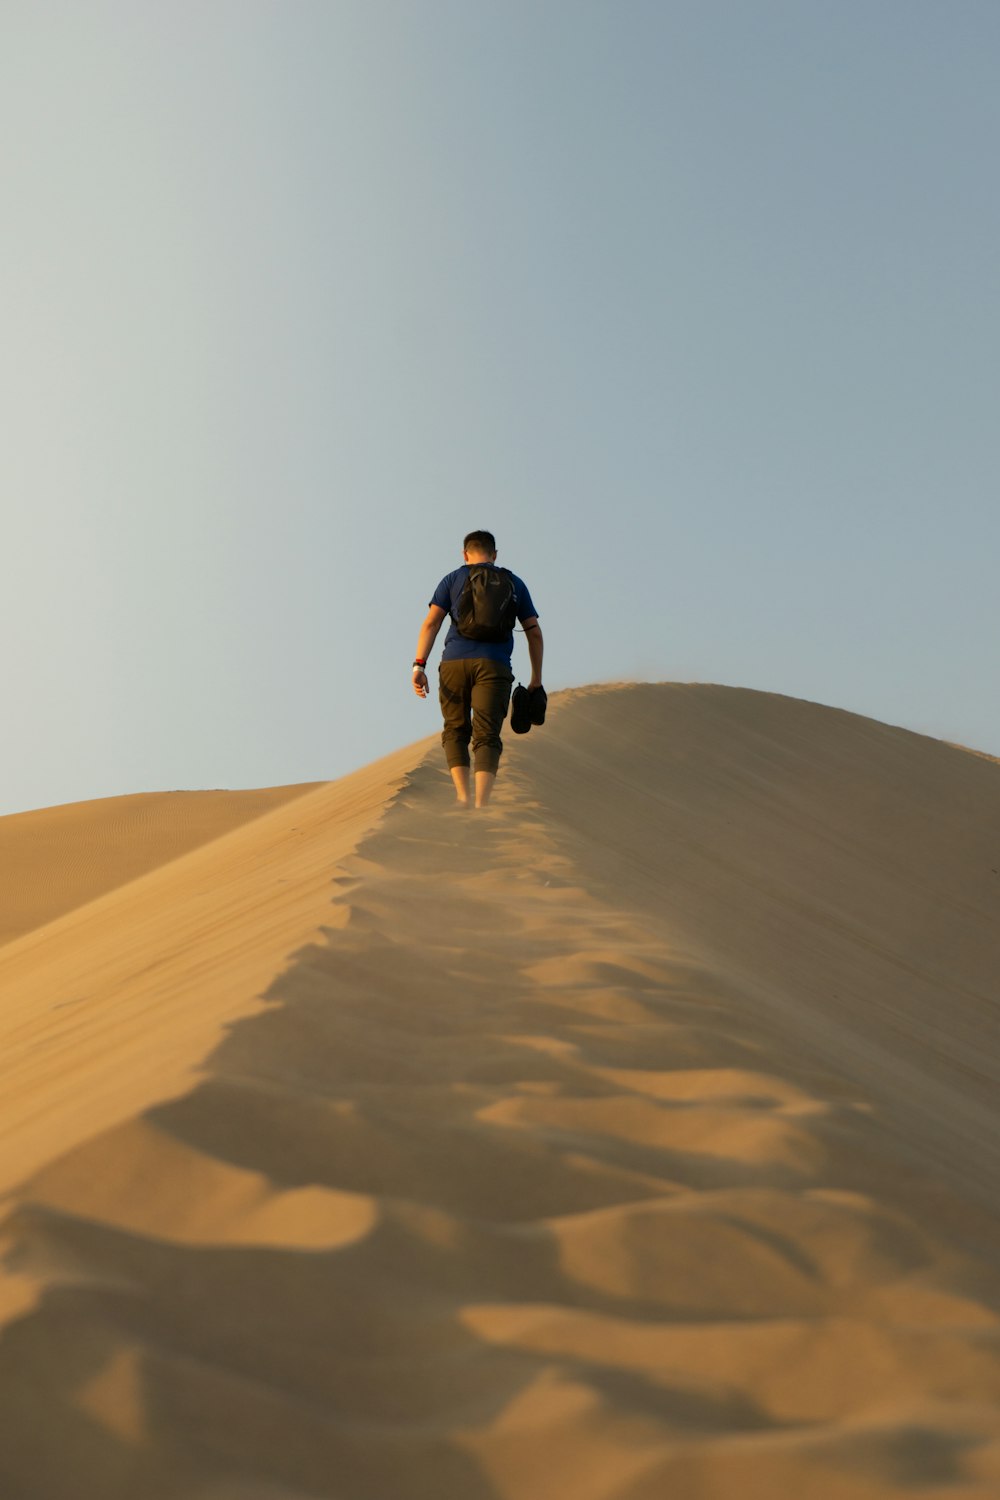 Un hombre subiendo una colina de arena